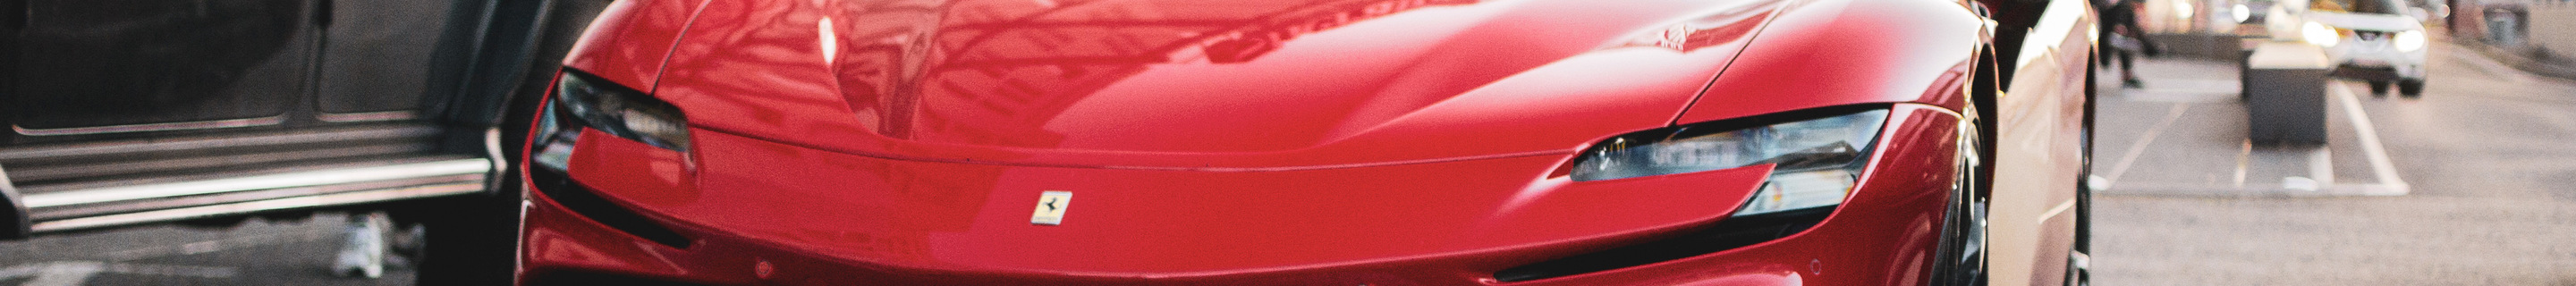 Ferrari SF90 Stradale Assetto Fiorano